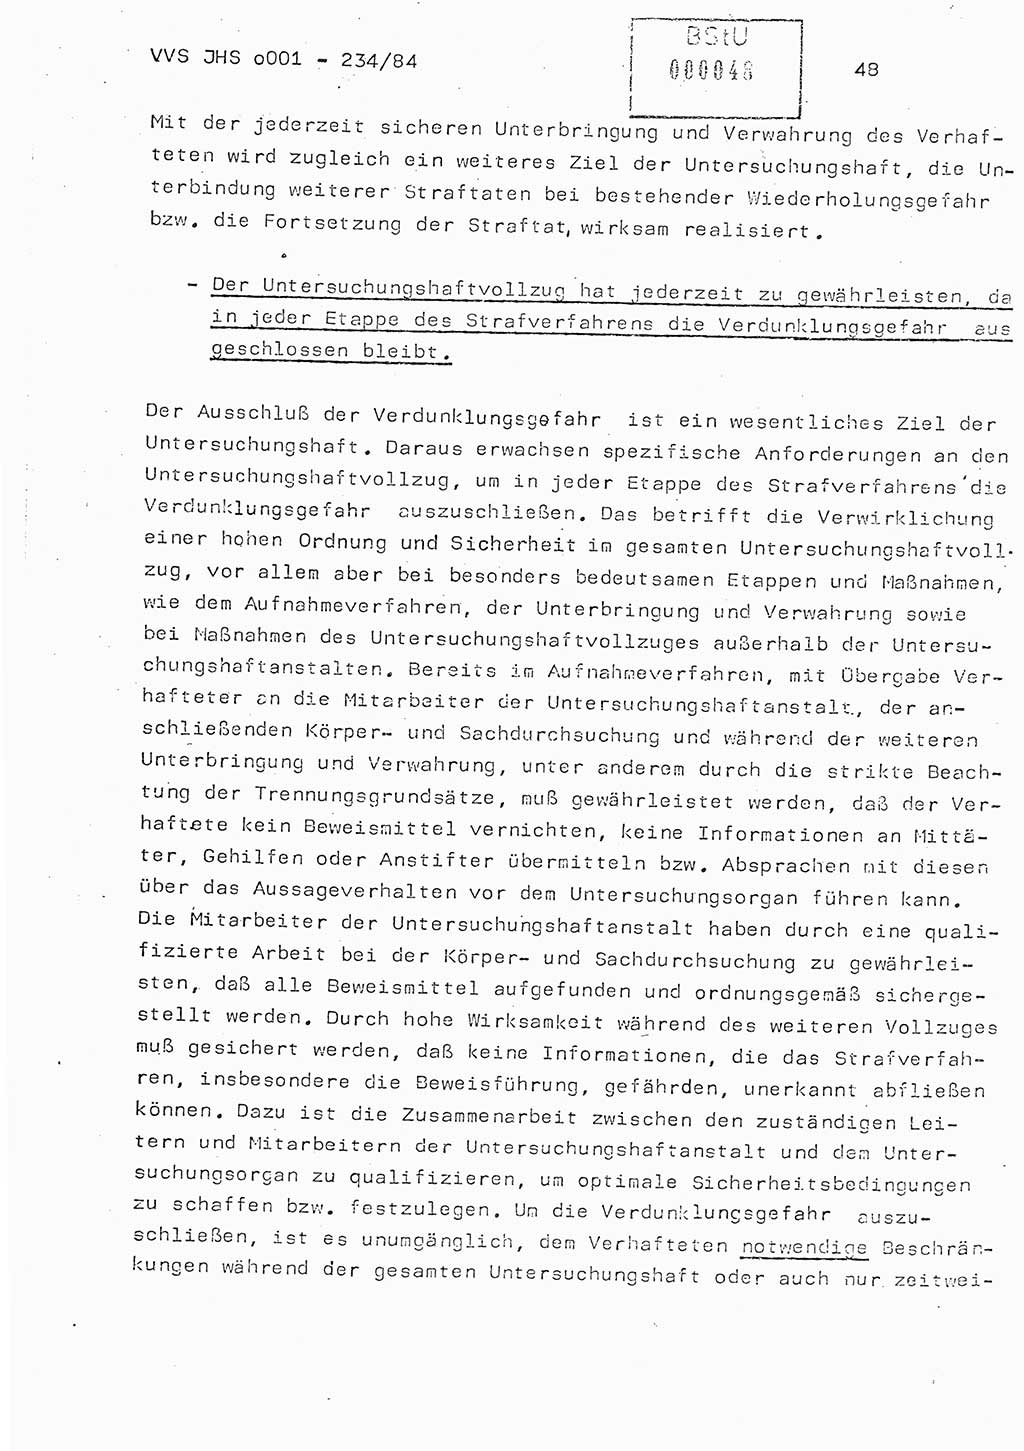 Dissertation Oberst Siegfried Rataizick (Abt. ⅩⅣ), Oberstleutnant Volkmar Heinz (Abt. ⅩⅣ), Oberstleutnant Werner Stein (HA Ⅸ), Hauptmann Heinz Conrad (JHS), Ministerium für Staatssicherheit (MfS) [Deutsche Demokratische Republik (DDR)], Juristische Hochschule (JHS), Vertrauliche Verschlußsache (VVS) o001-234/84, Potsdam 1984, Seite 48 (Diss. MfS DDR JHS VVS o001-234/84 1984, S. 48)